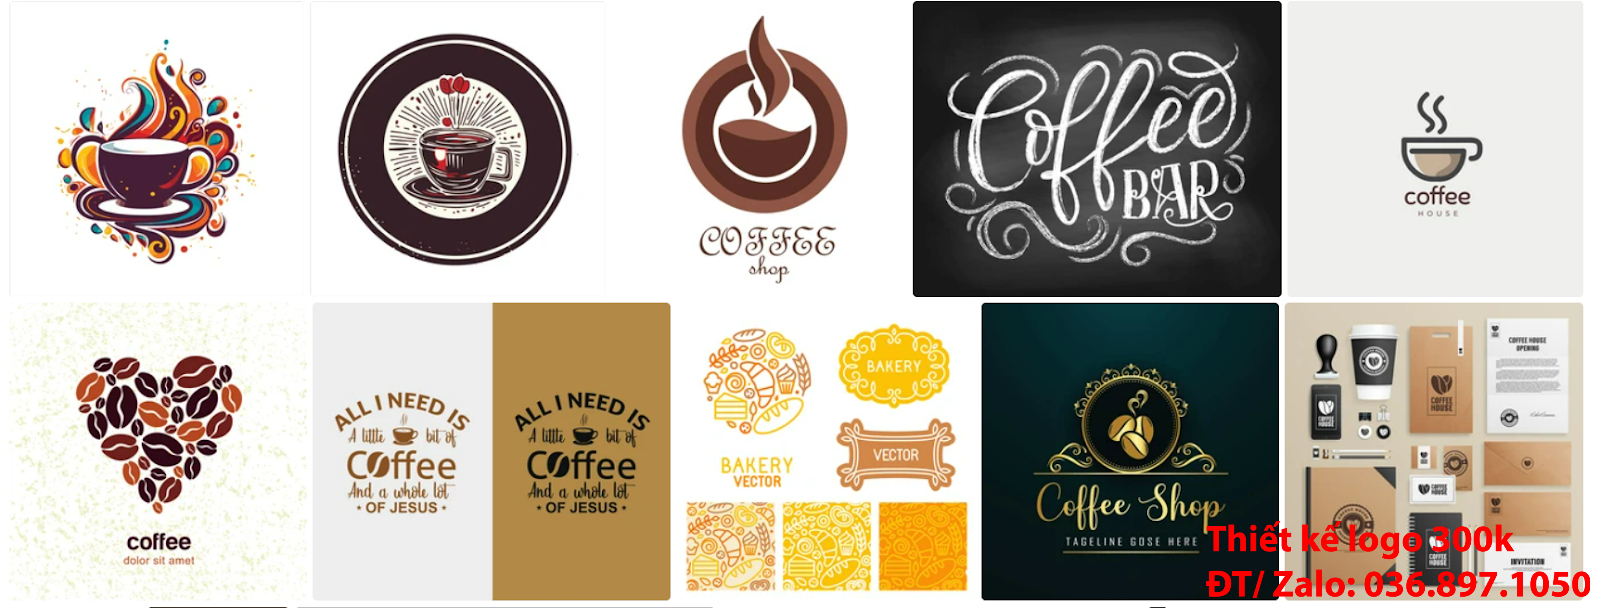 Công ty tạo mẫu thiết kế logo cà phê cafe coffee chuyên nghiệp online giá rẻ 300k 500k